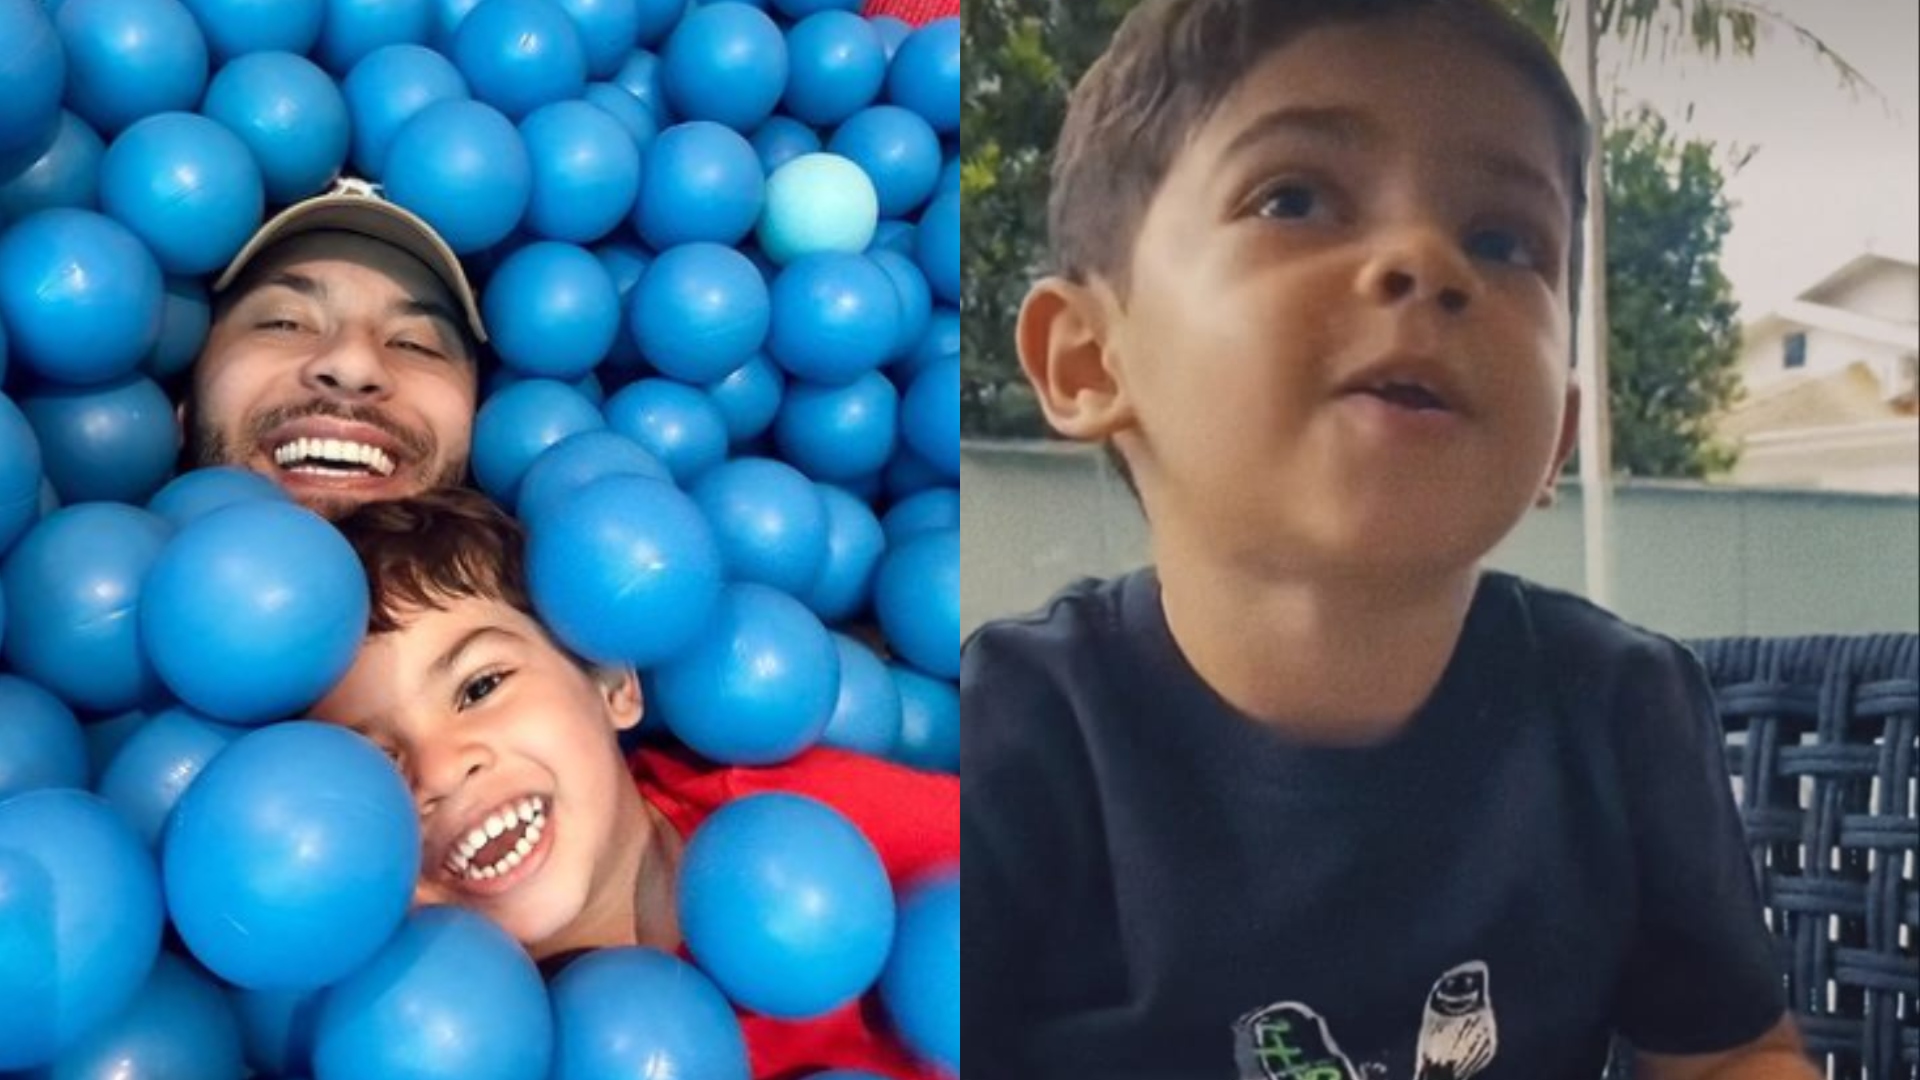 Filho de Marília Mendonça faz vídeo emocionante no aniversário de Murilo Huff: “Te amo”